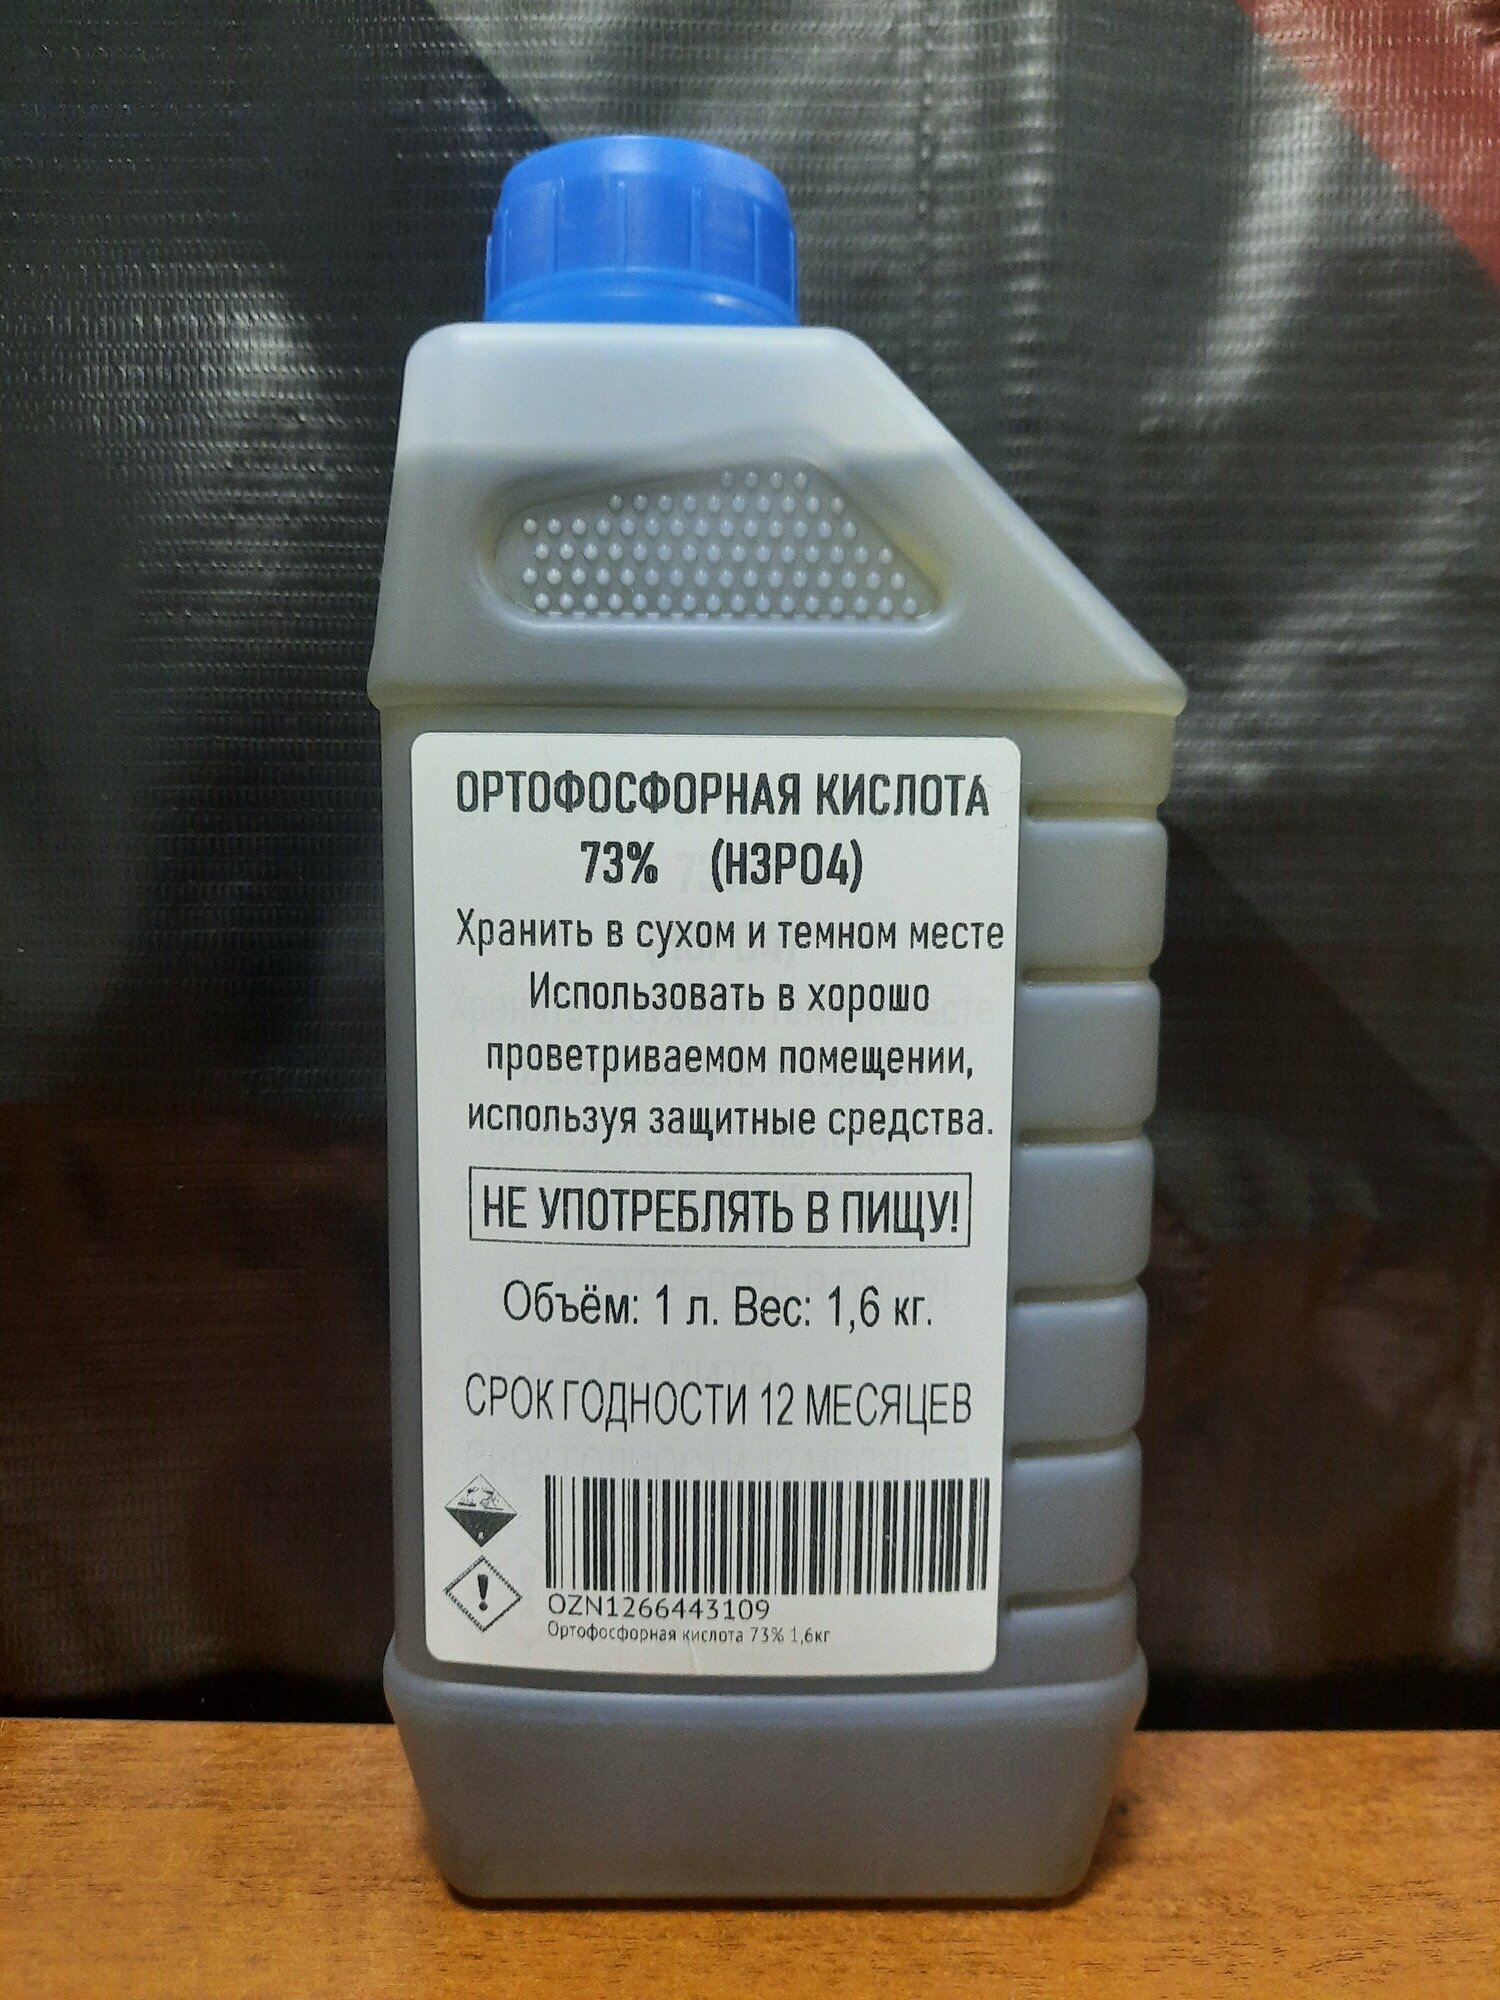 Ортофосфорная кислота 73% 7кг